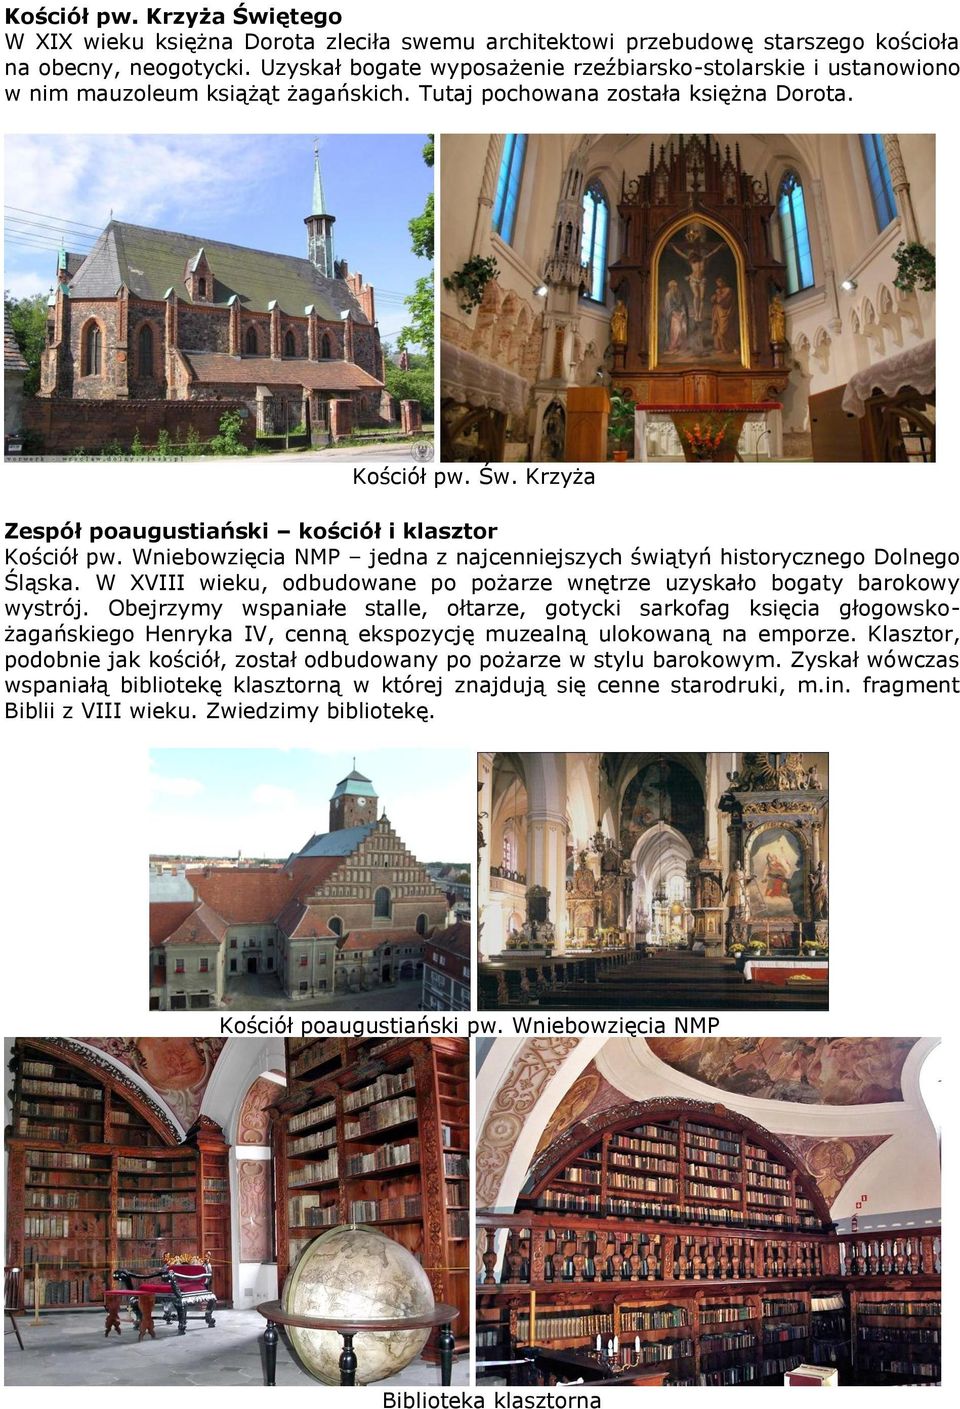 Krzyża Zespół poaugustiański kościół i klasztor Kościół pw. Wniebowzięcia NMP jedna z najcenniejszych świątyń historycznego Dolnego Śląska.